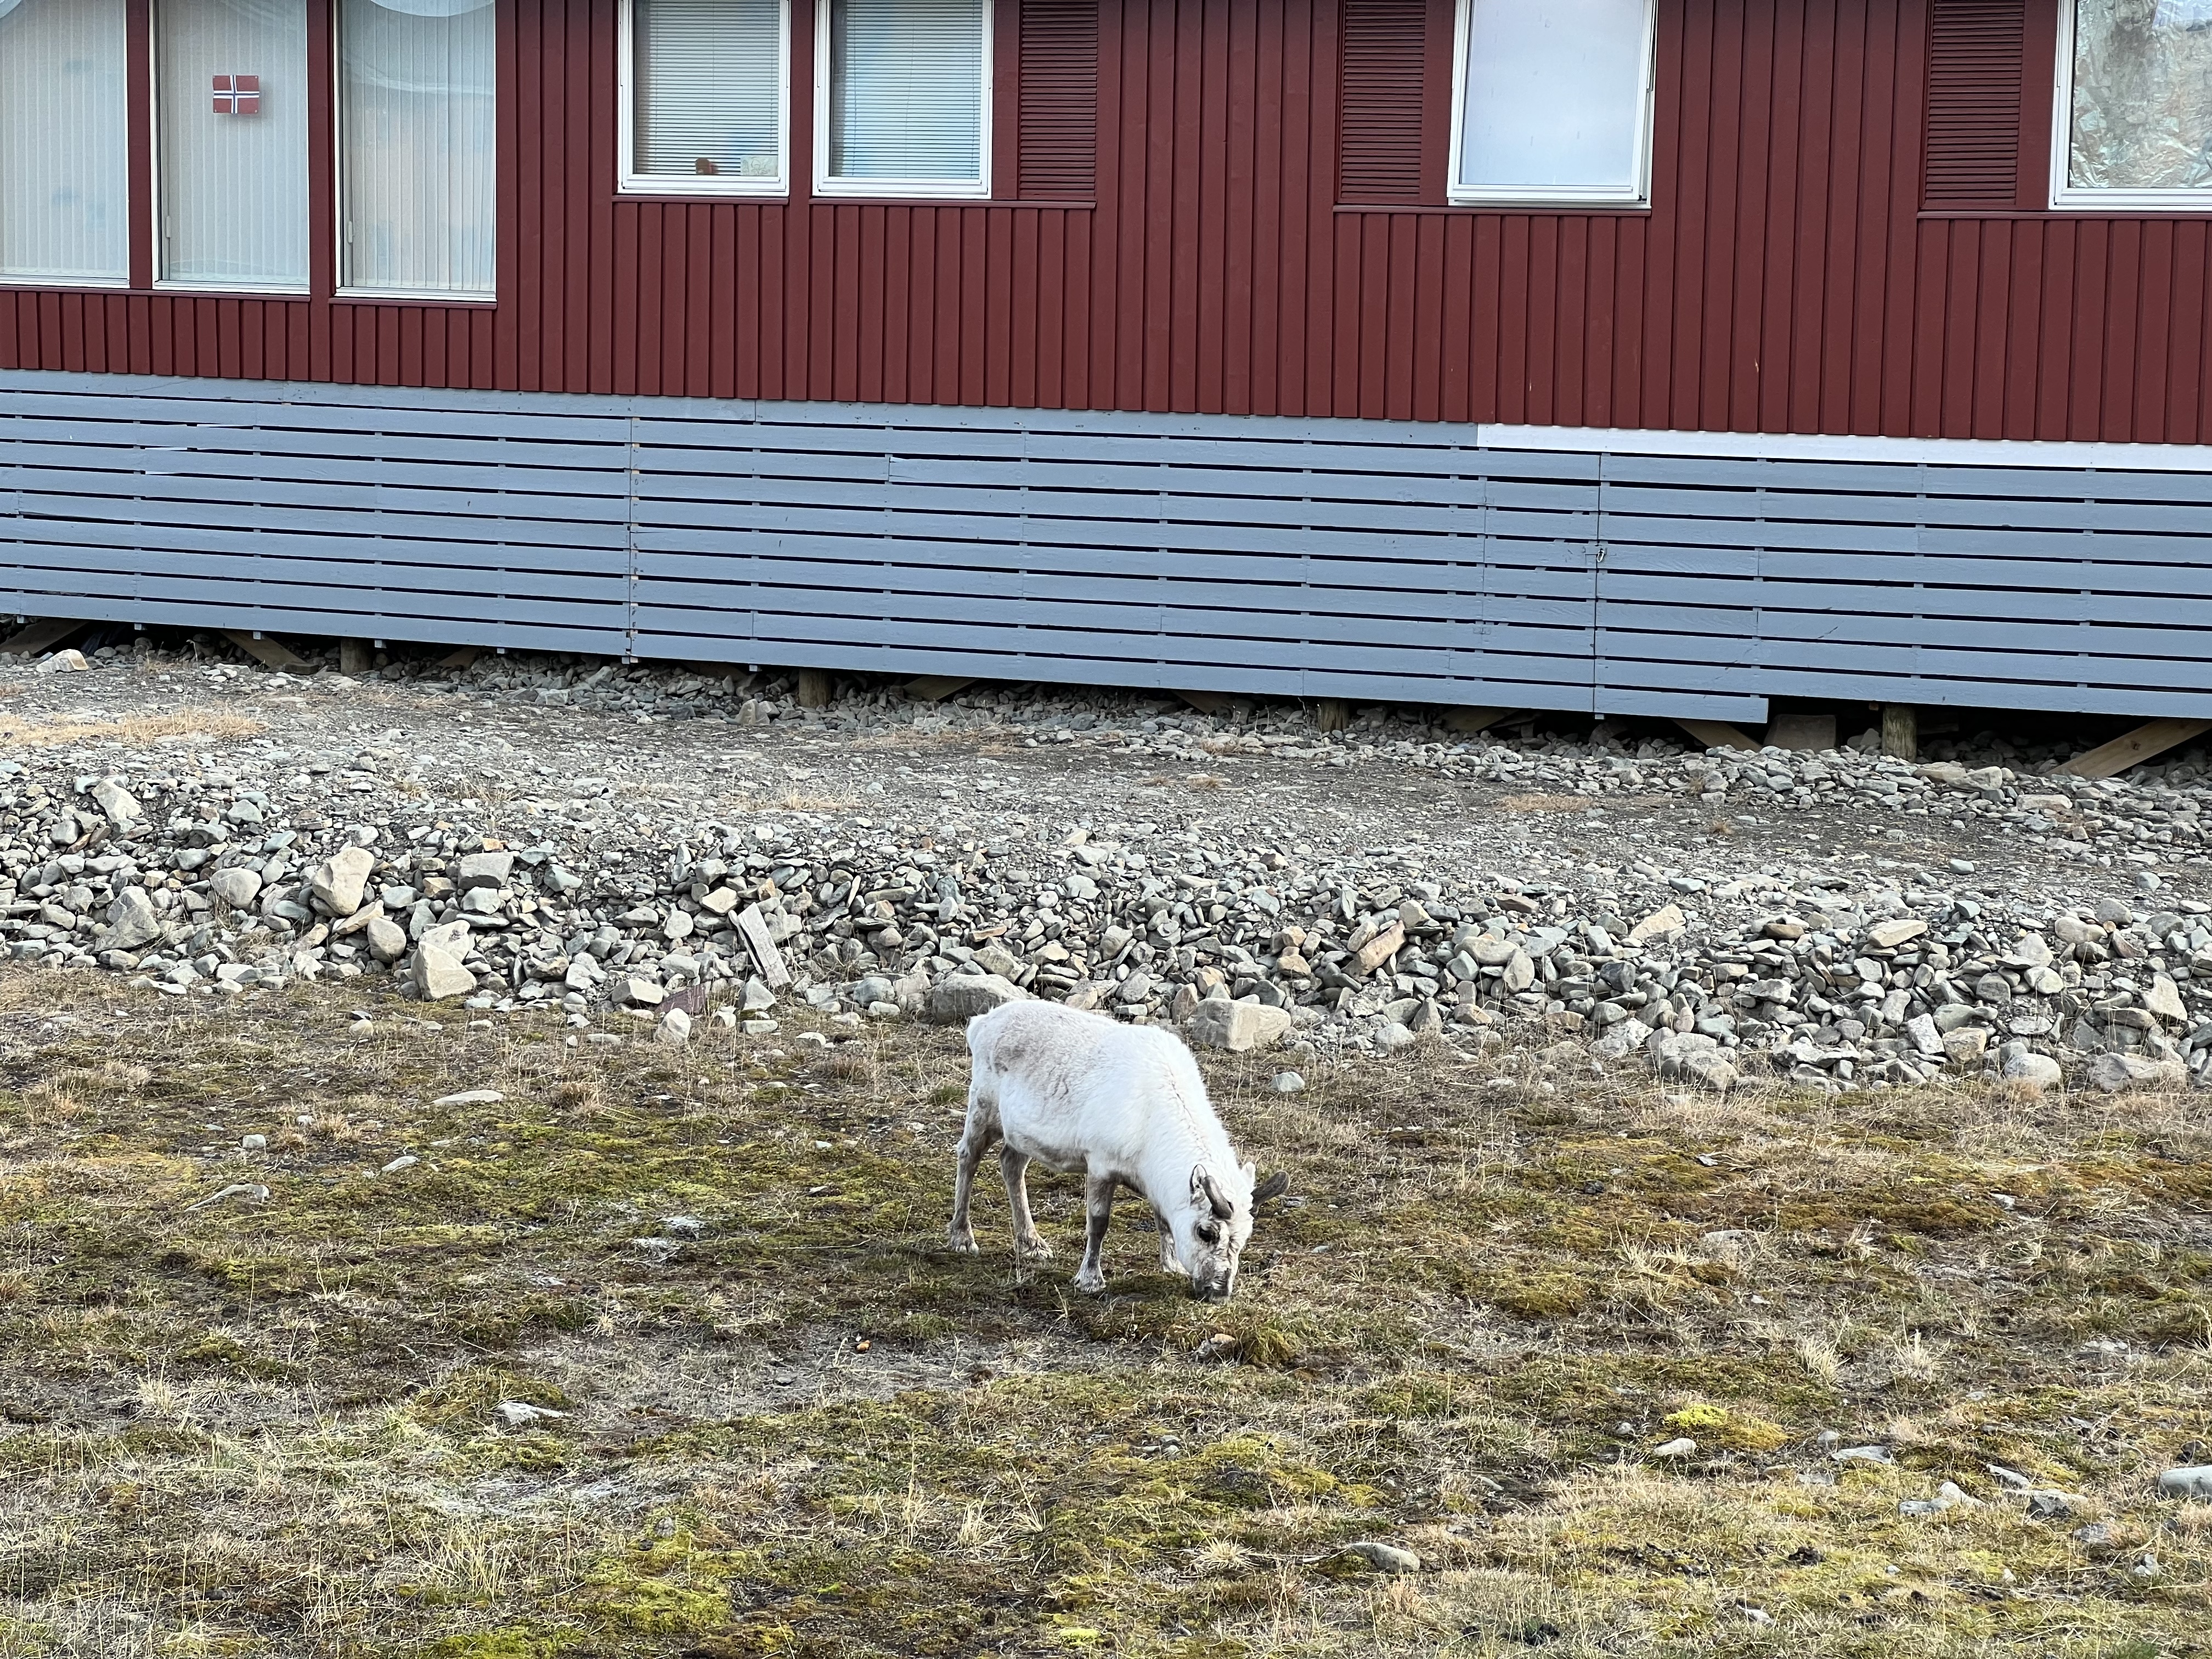 A reindeer grazing in Longyearbyen